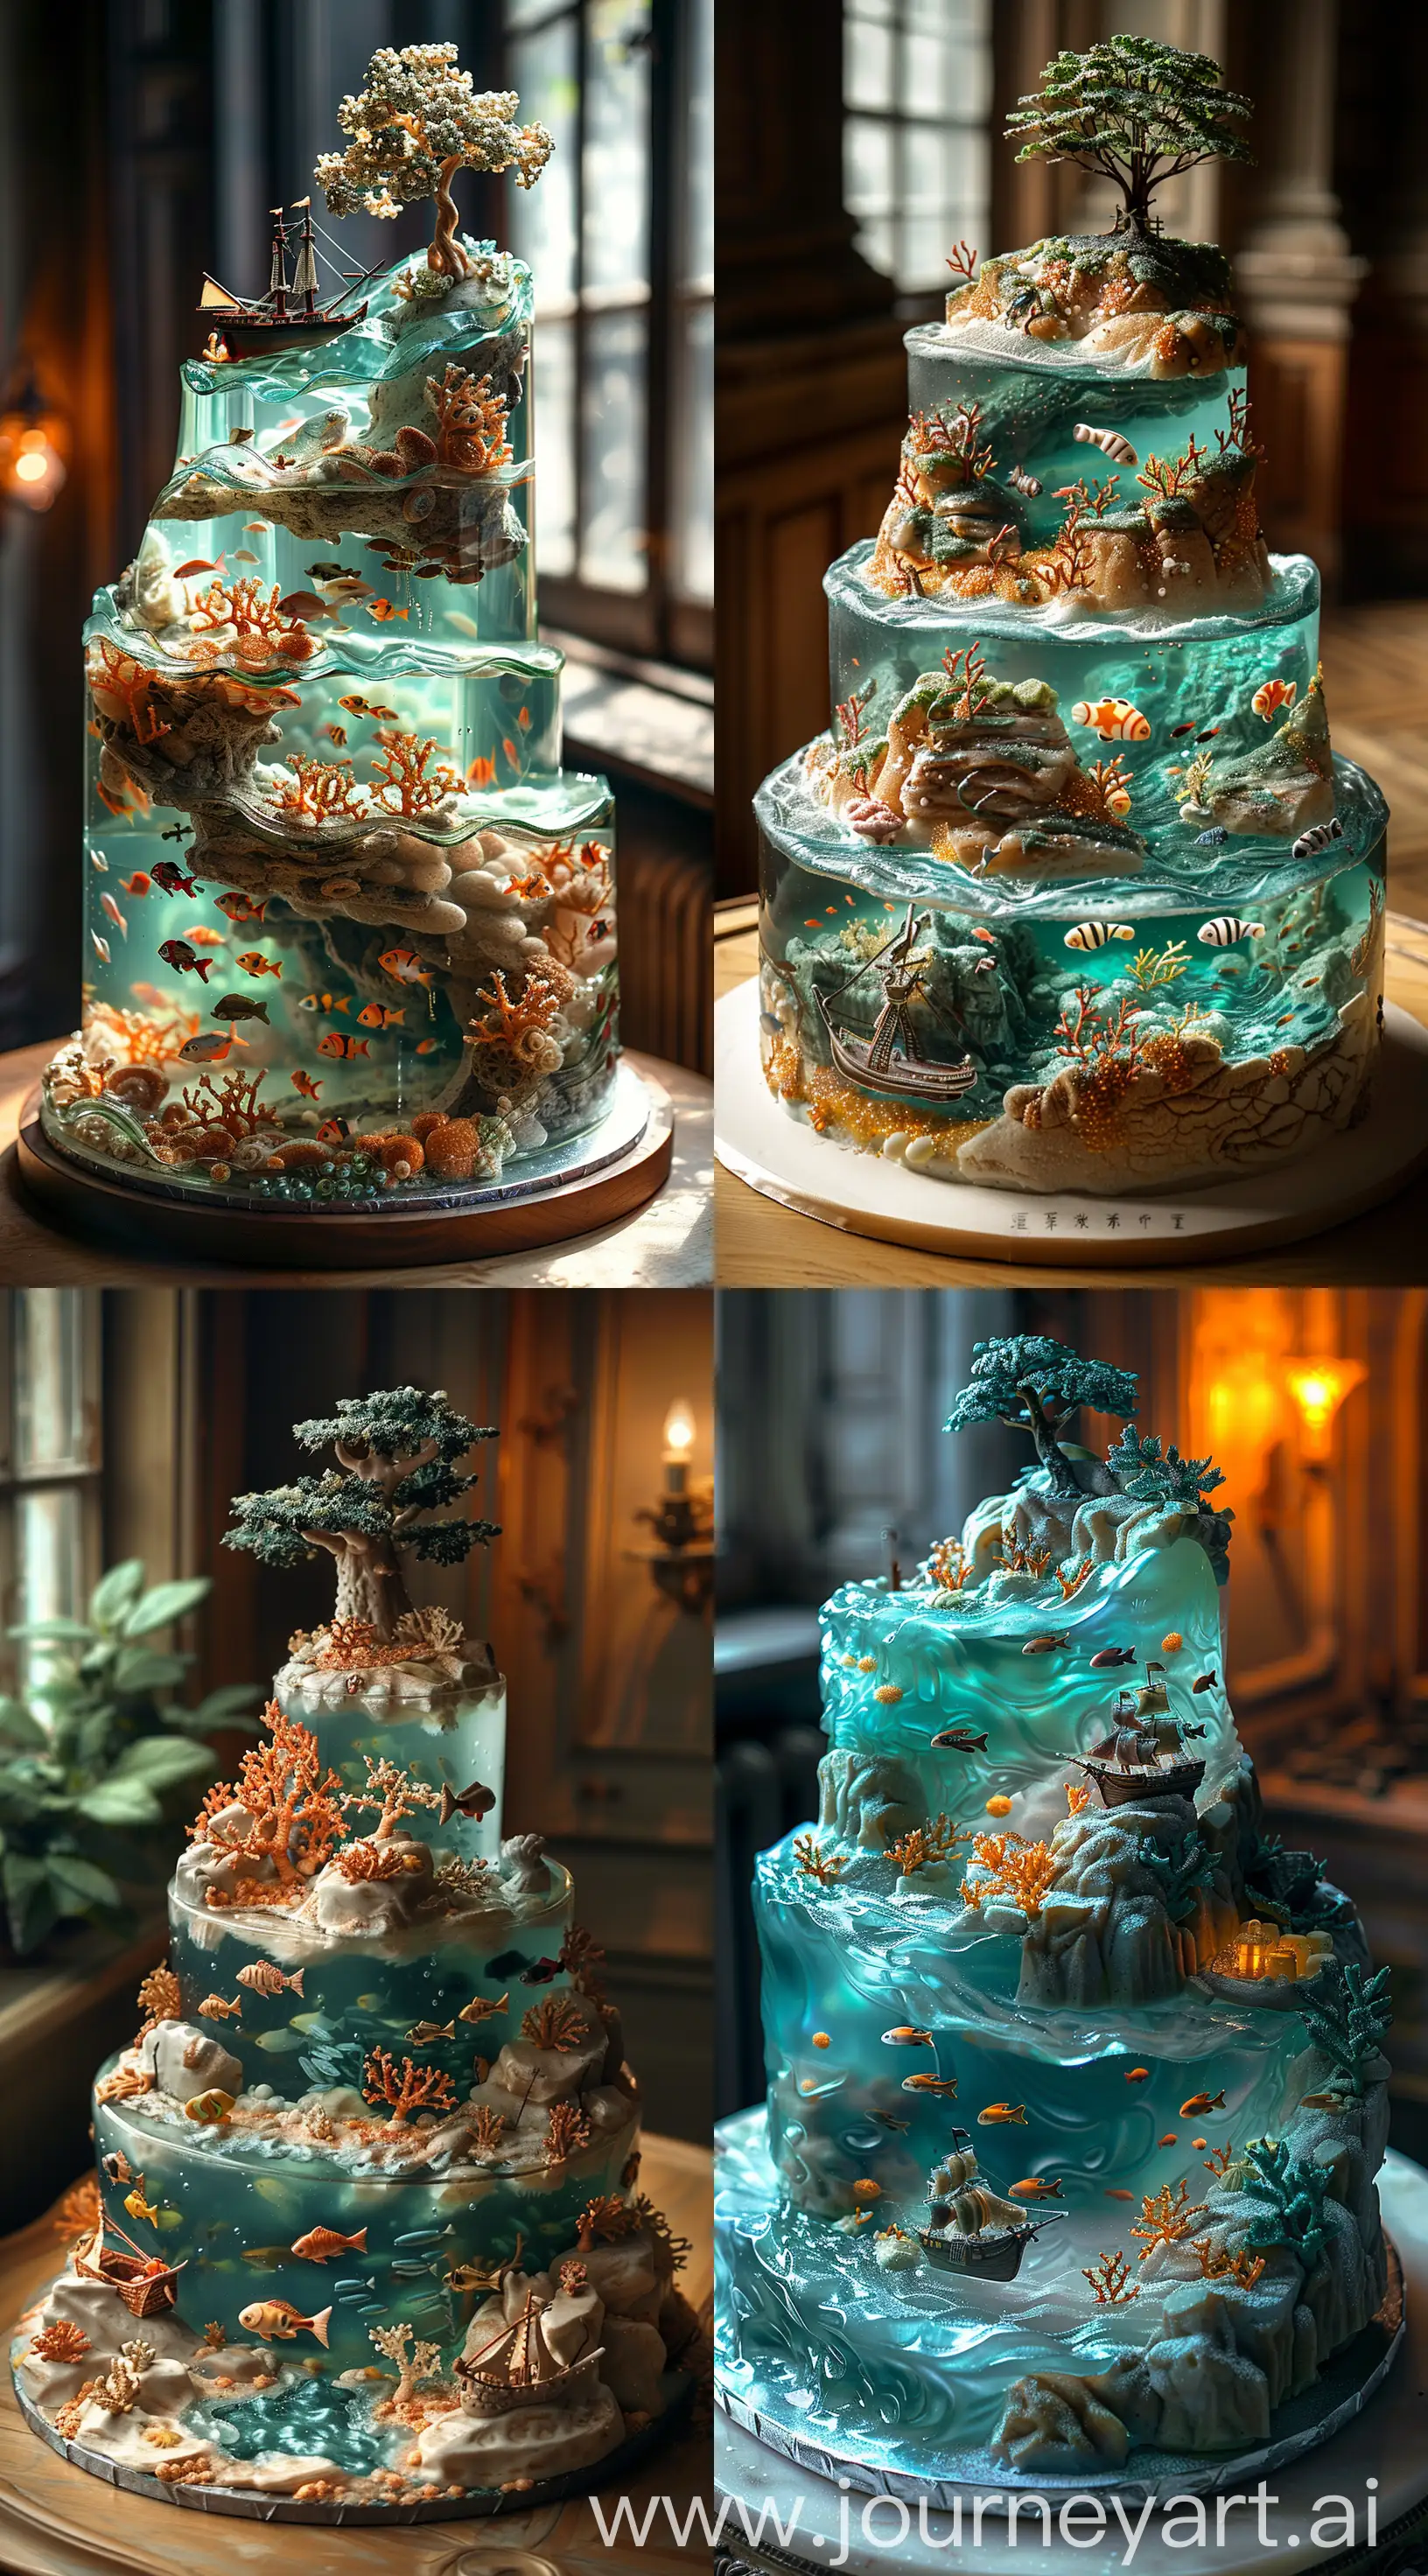 Underwater-Landscape-Wedding-Cake-in-Dimly-Lit-Gothic-Room